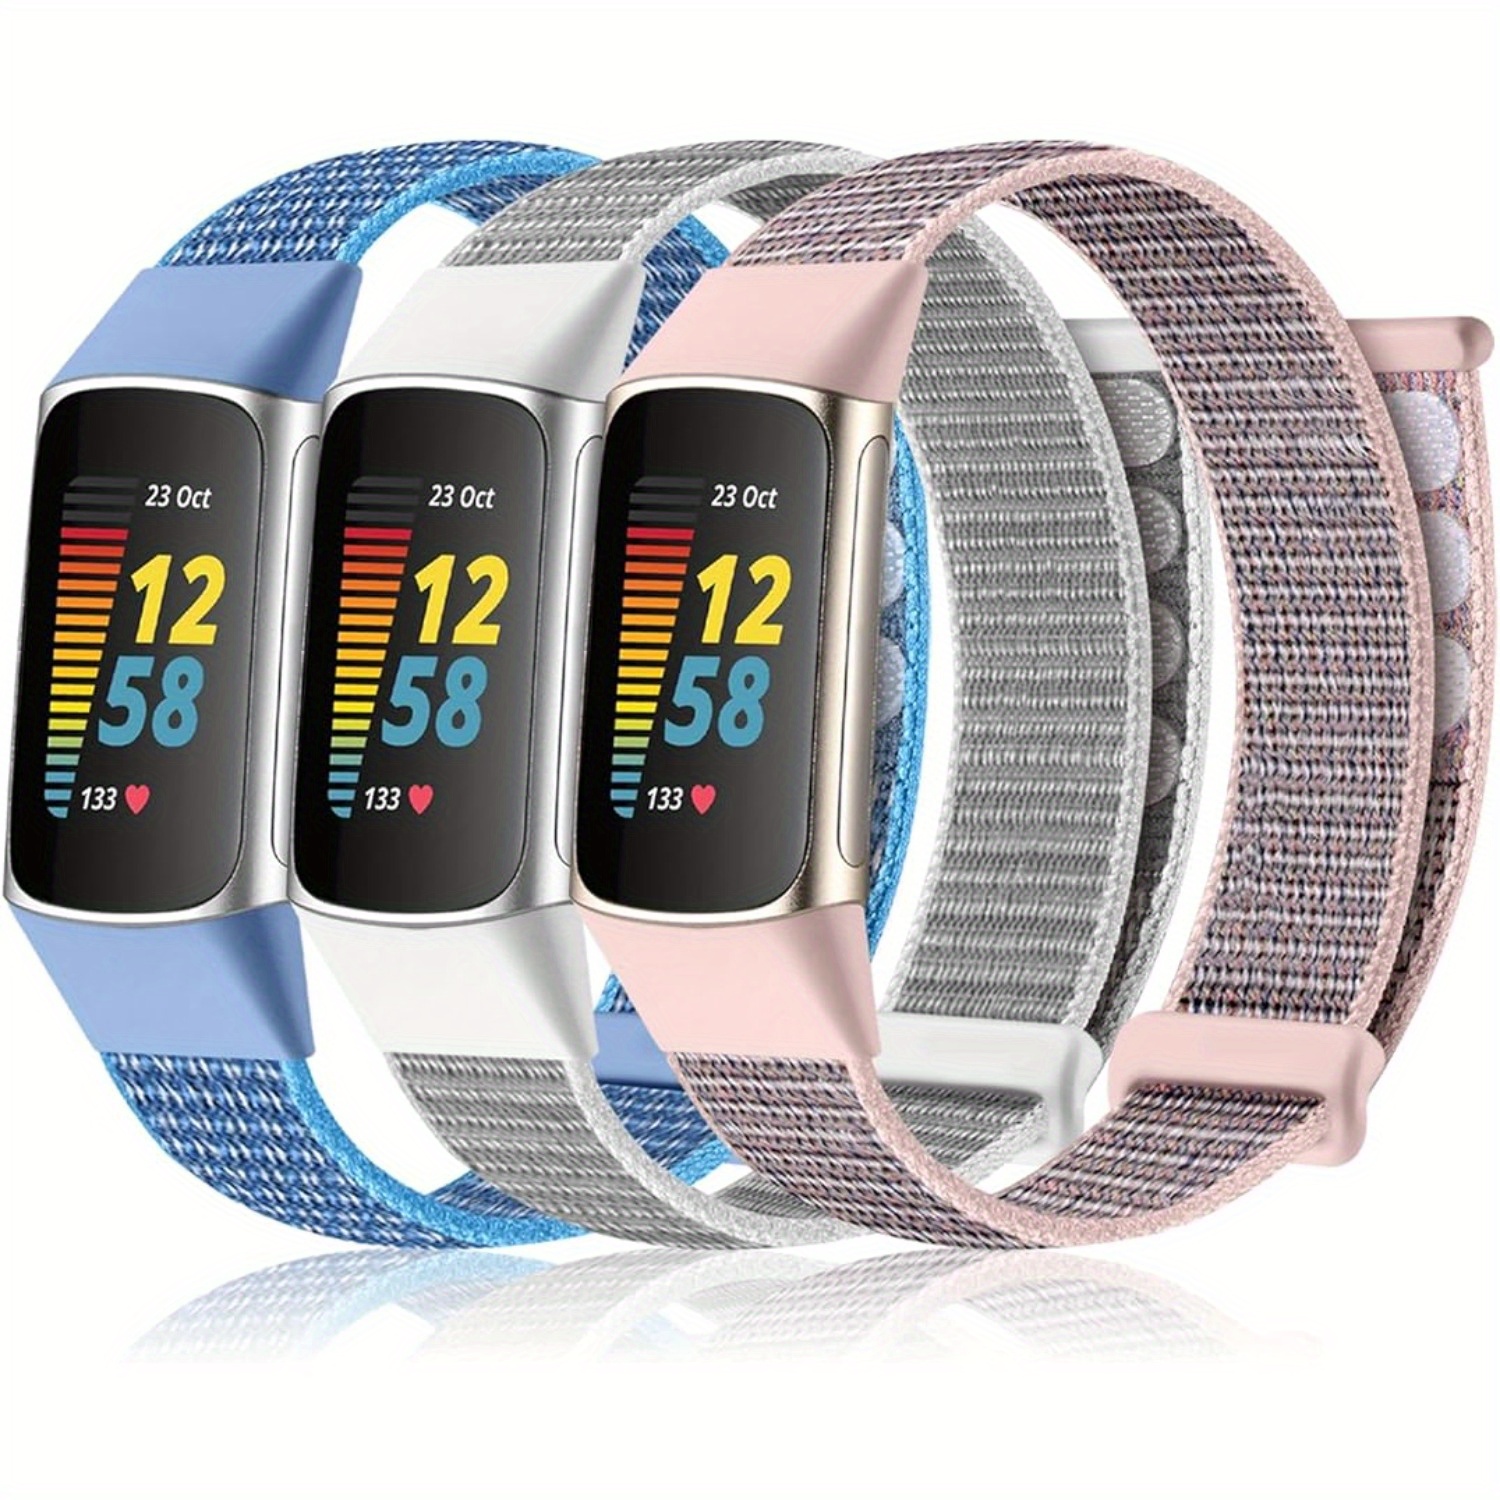  Correa de reloj compatible con Samsung Galaxy Fit SM-R370 para  mujeres y hombres, correas de repuesto ajustables de cuero suave, pulseras  para Samsung Galaxy Fit Fitness Smartwatch (marrón) : Celulares y